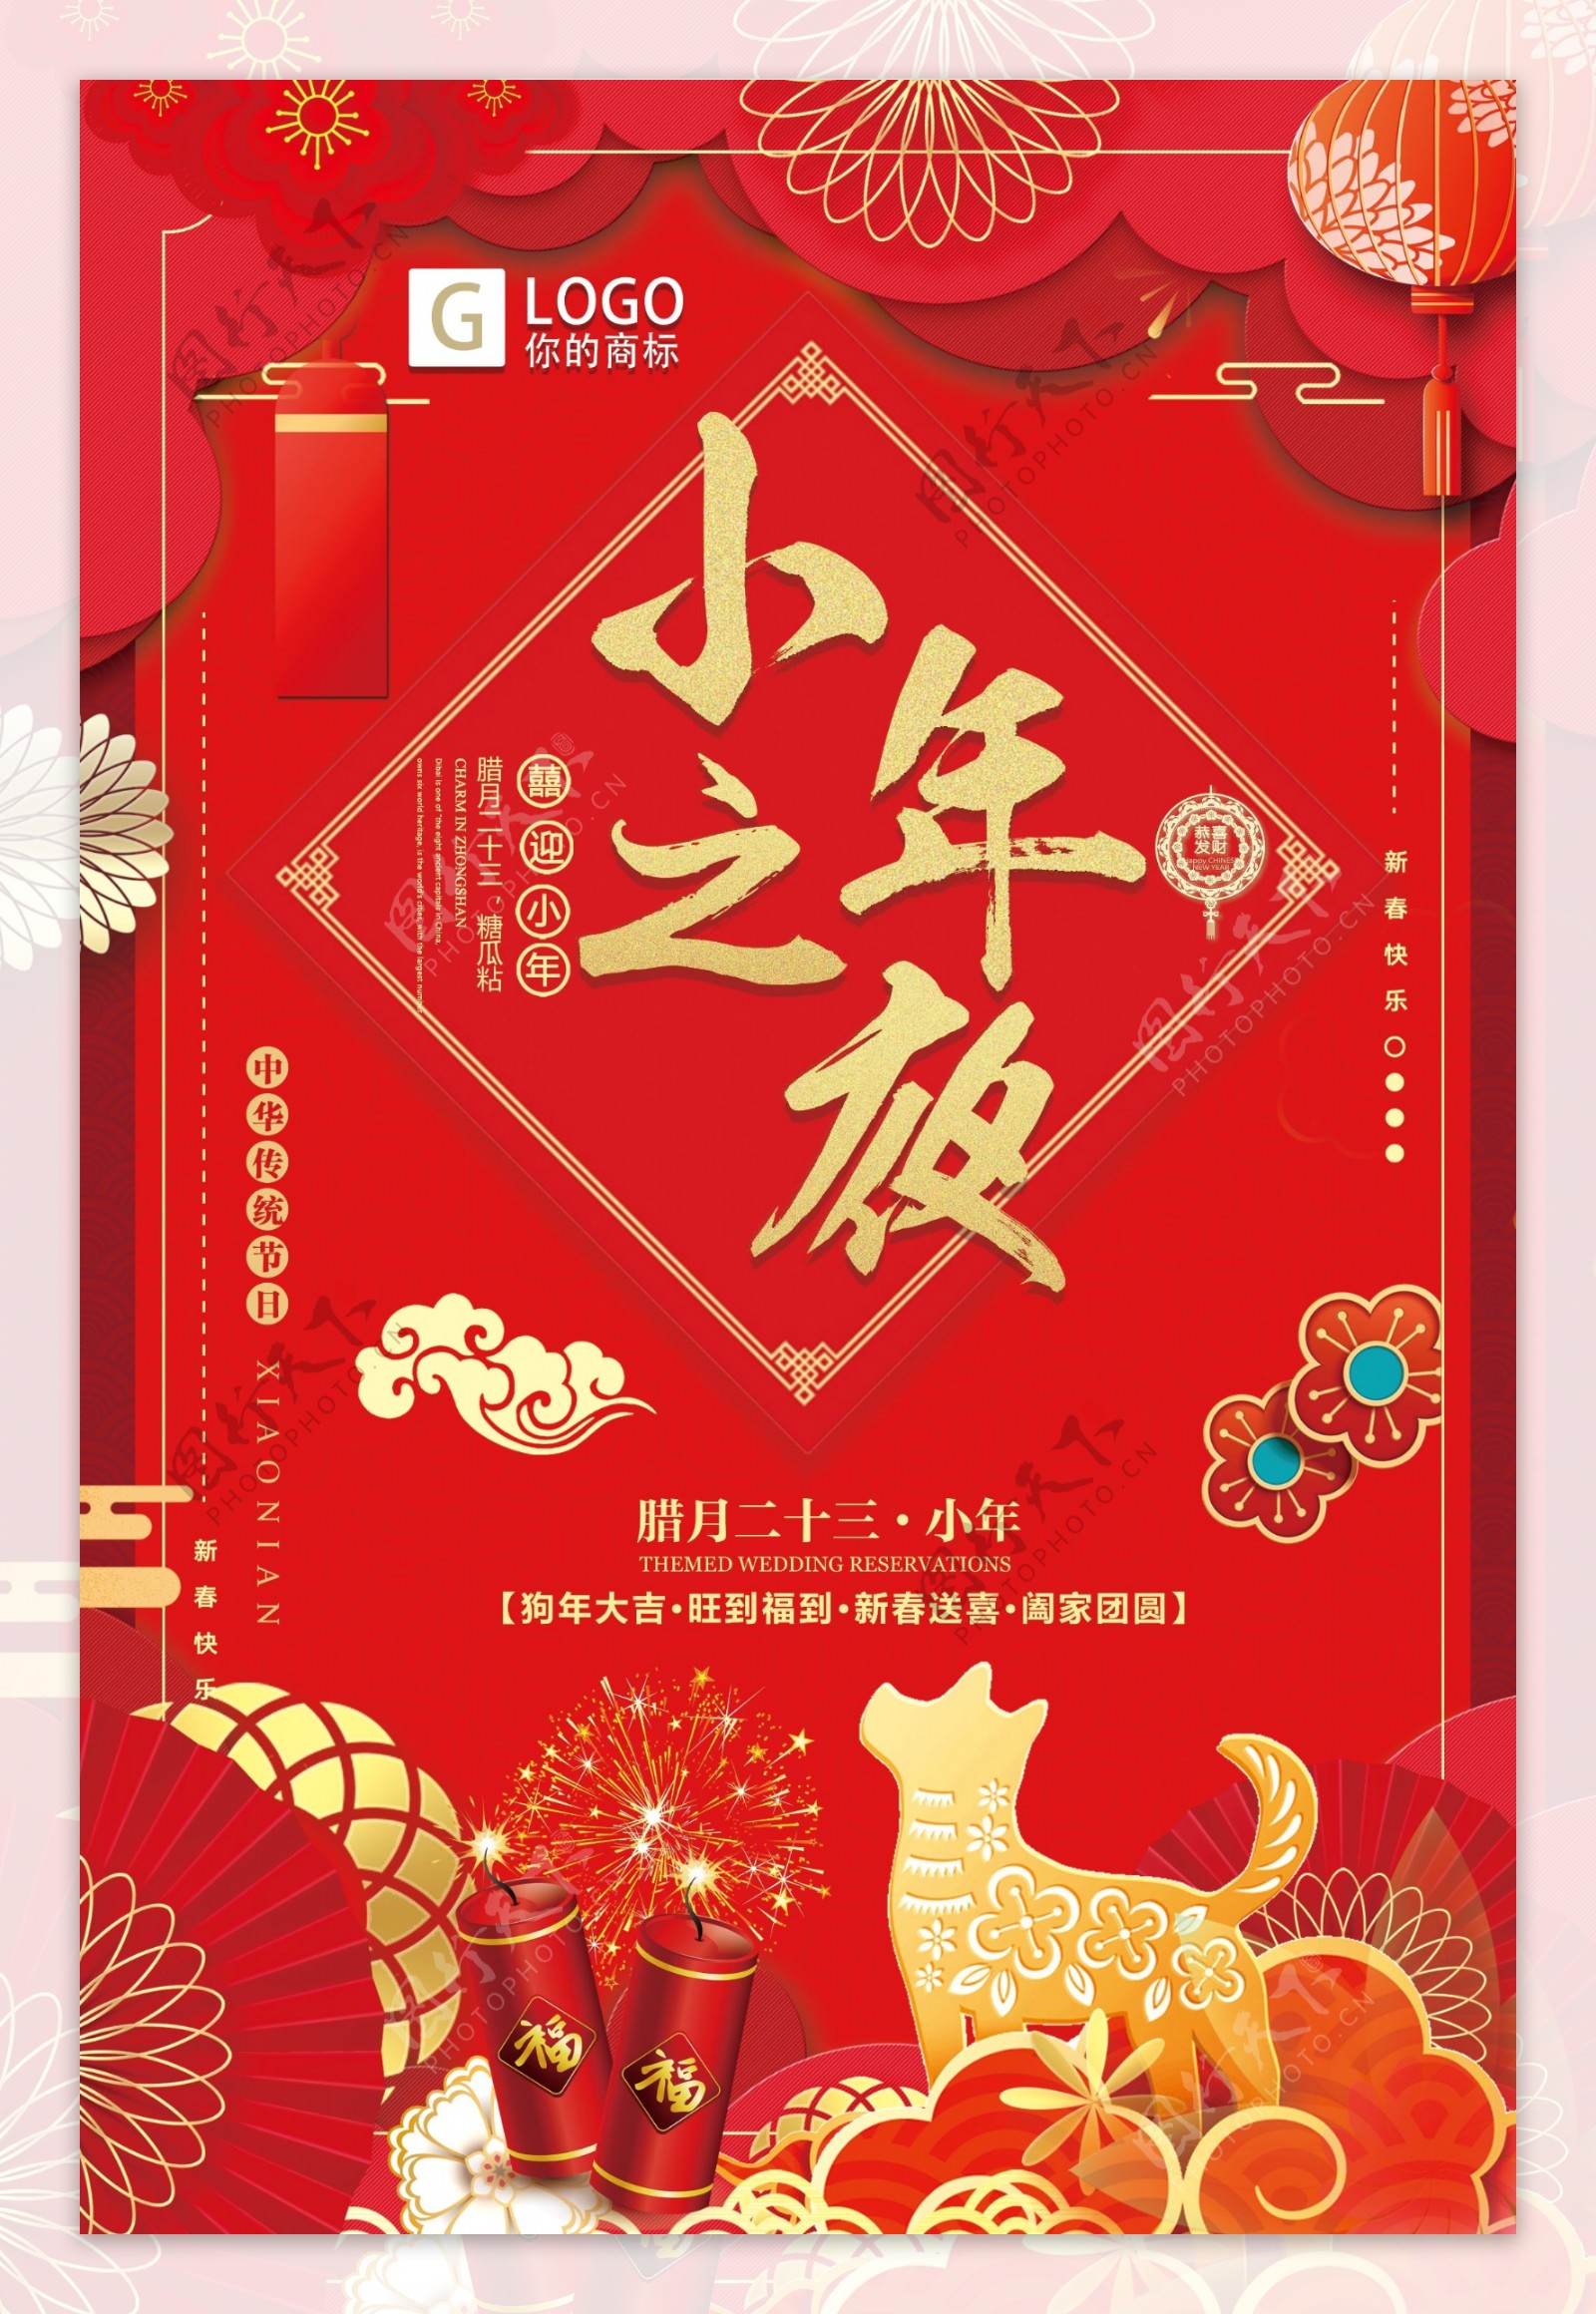 大红喜庆小年之夜创意宣传海报设计